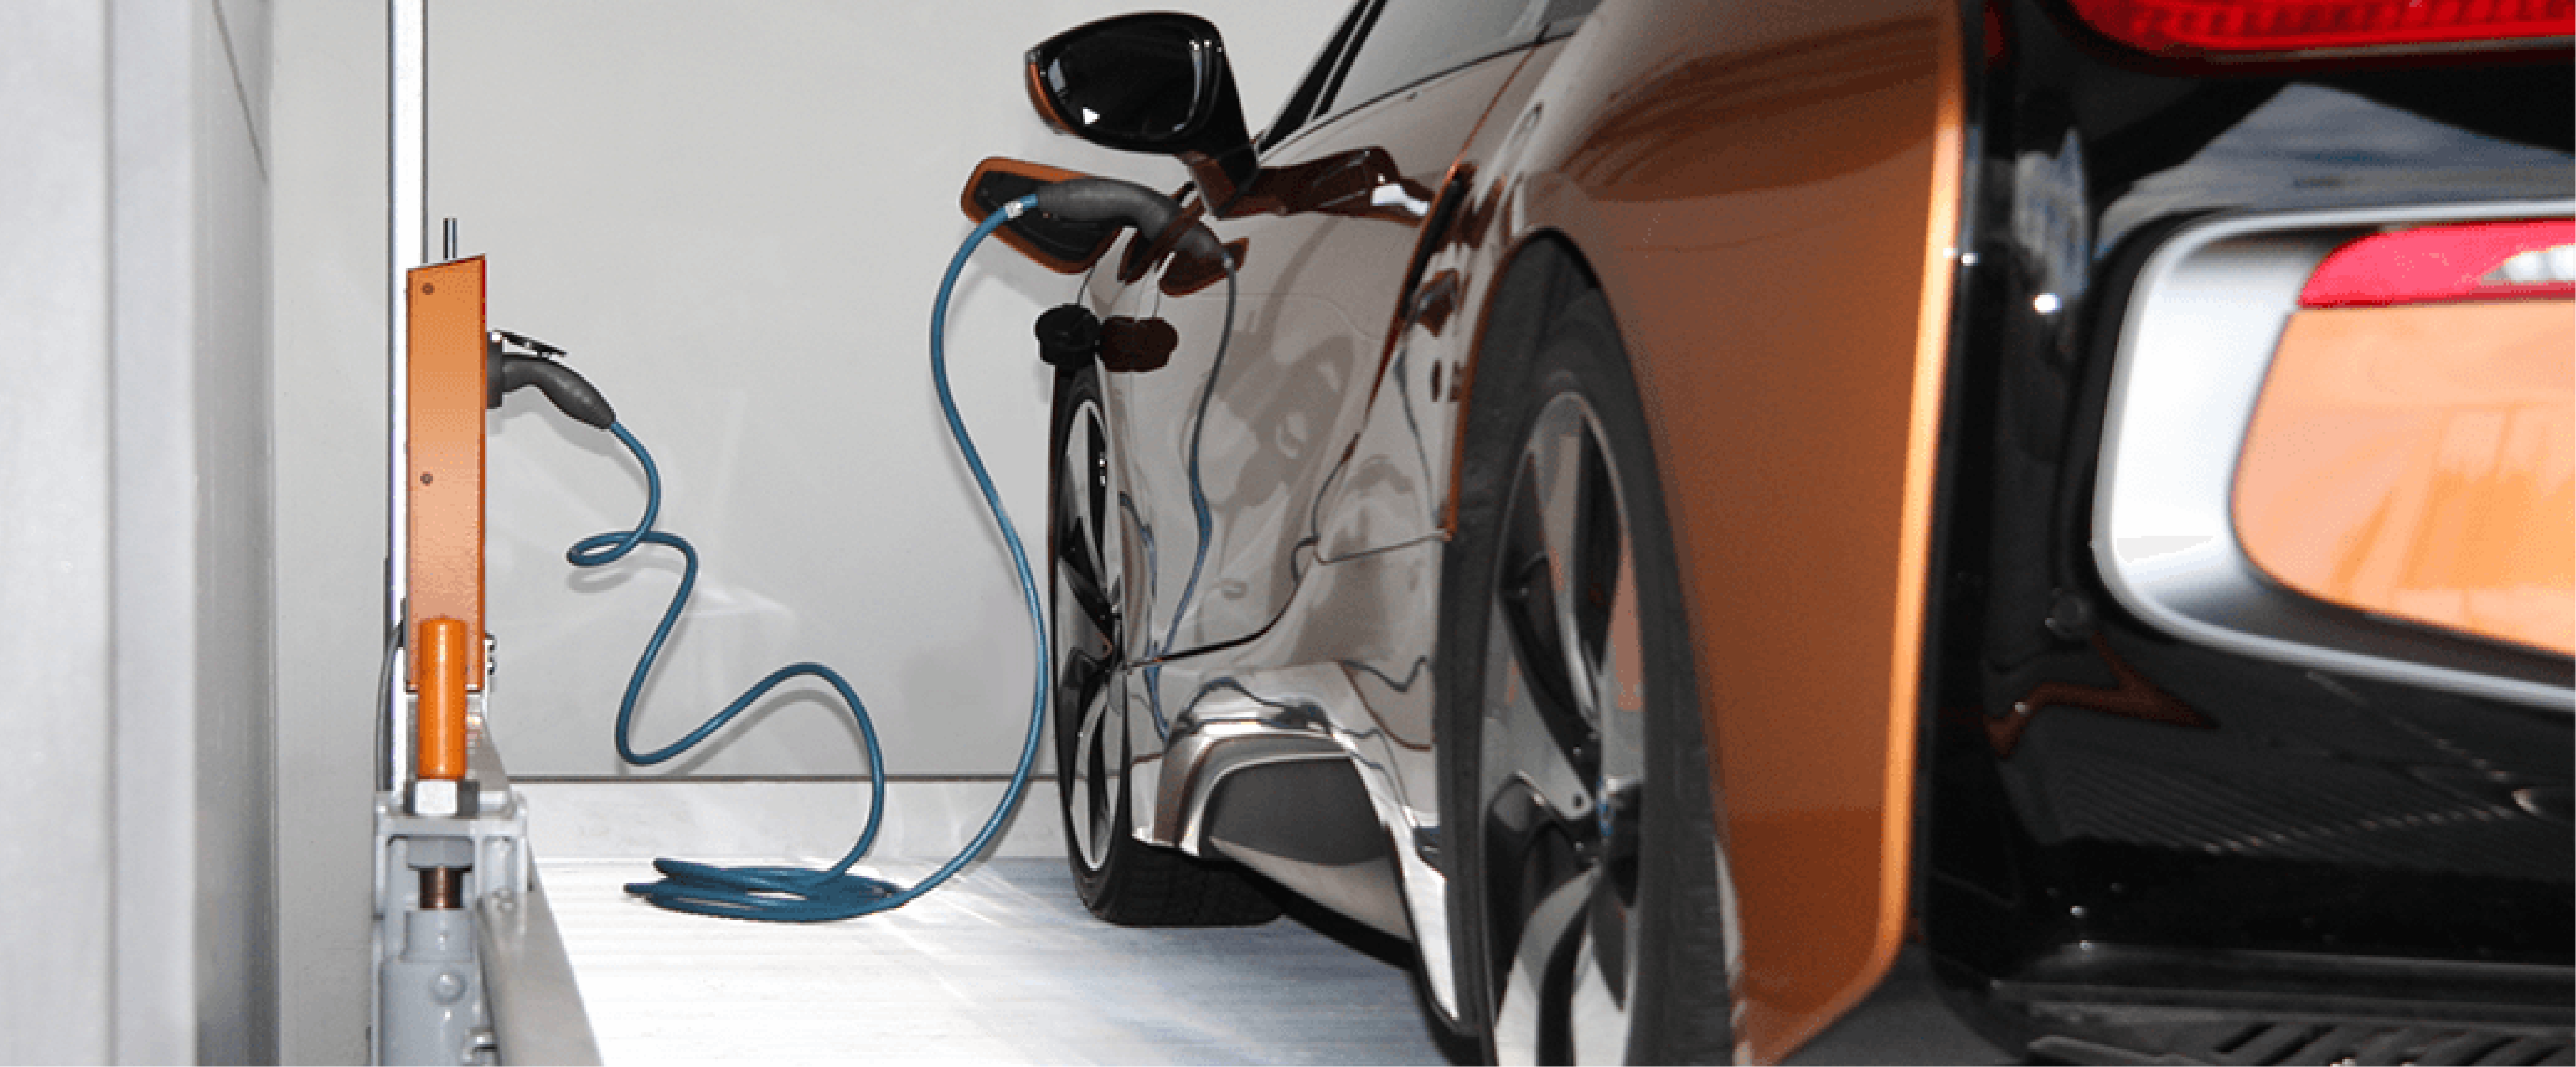 Multilevel Parking Systems and EV Charging Integration Blog